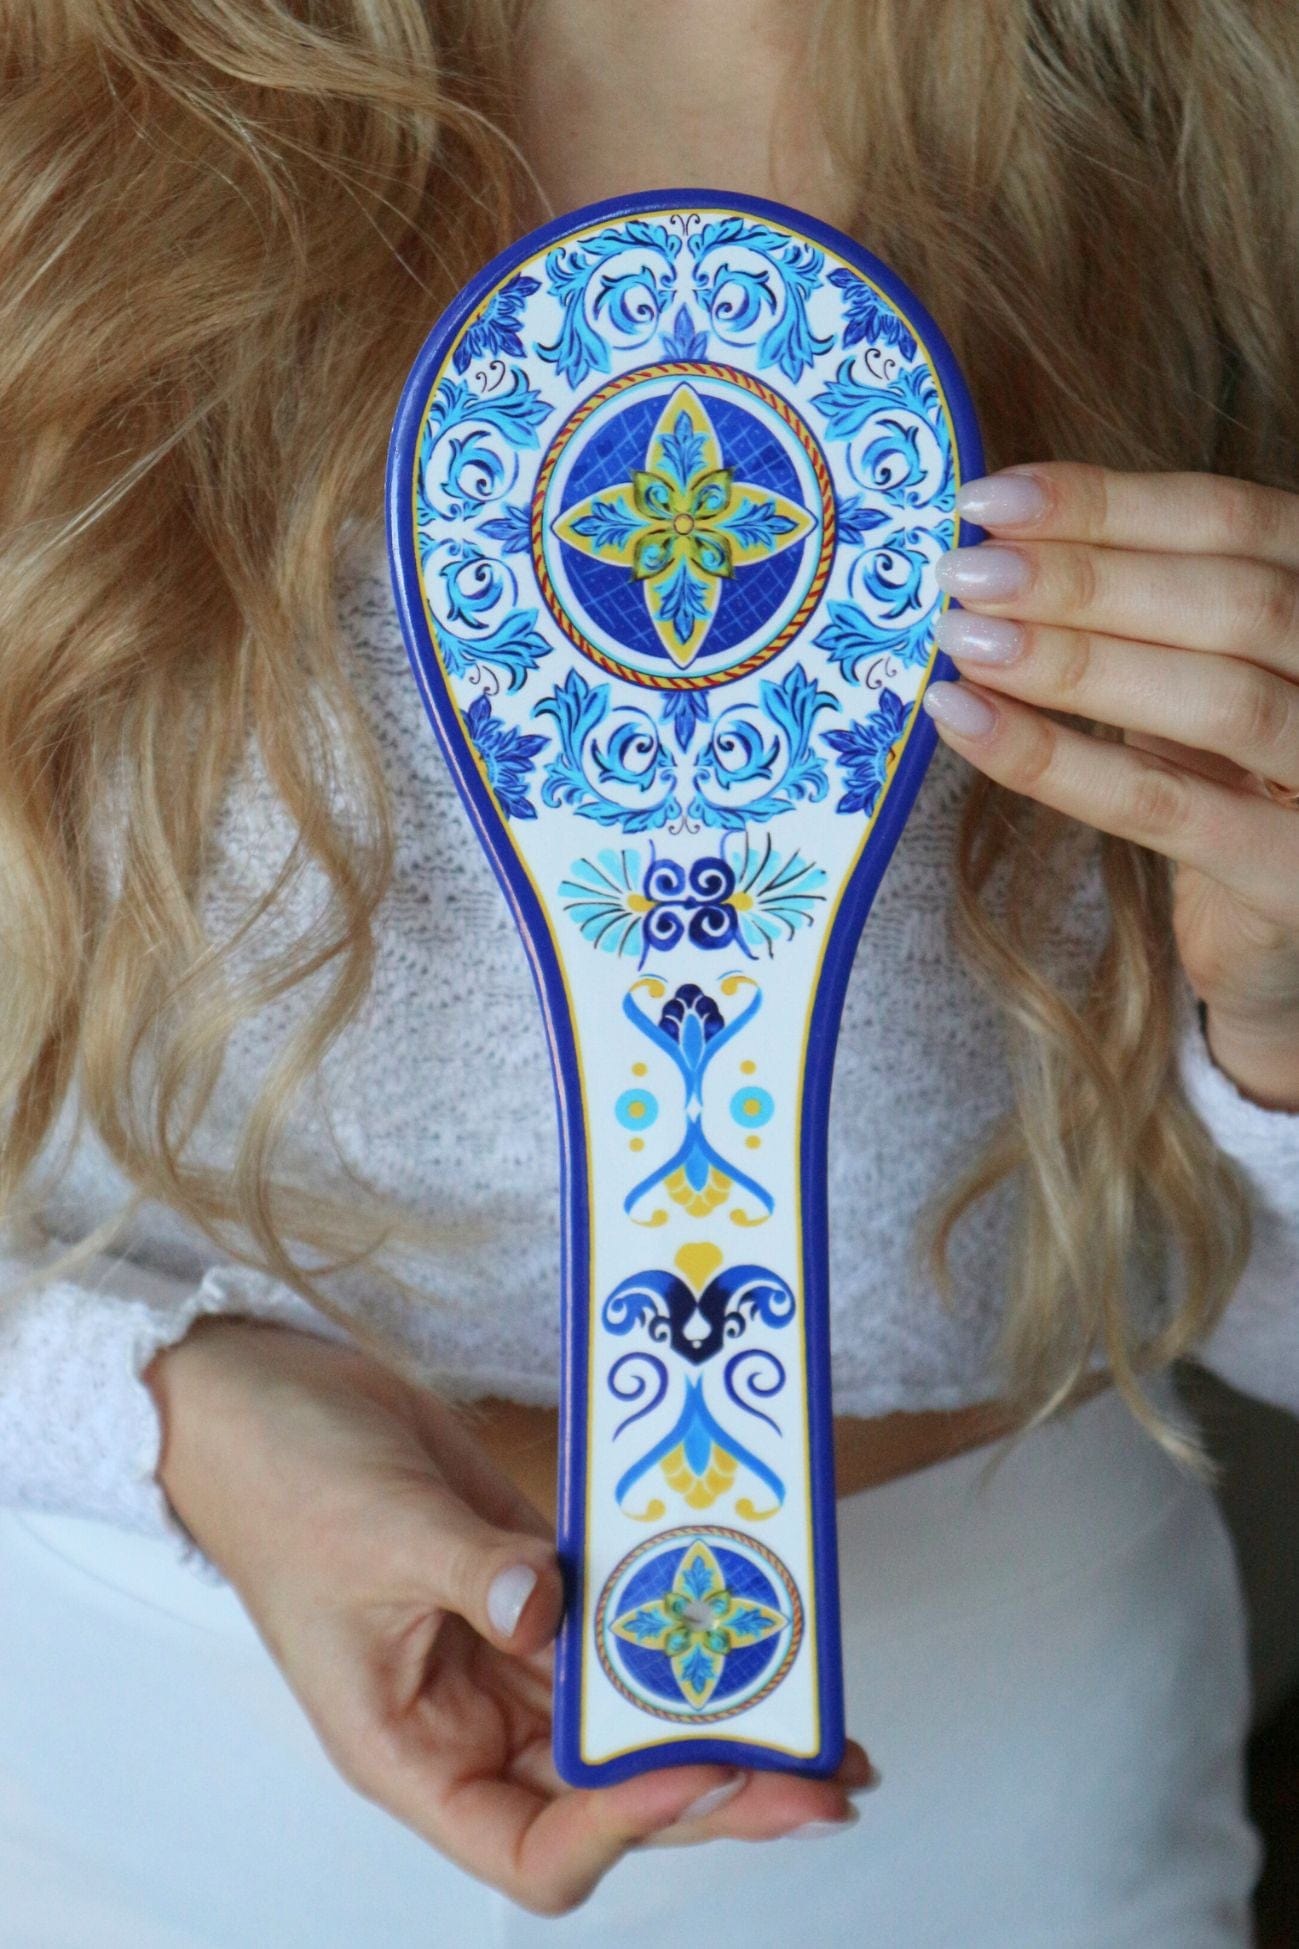 Item International Mineo Mineo - Poggiamestolo bianco e azzurro in ceramica con motivo artistico | Item International